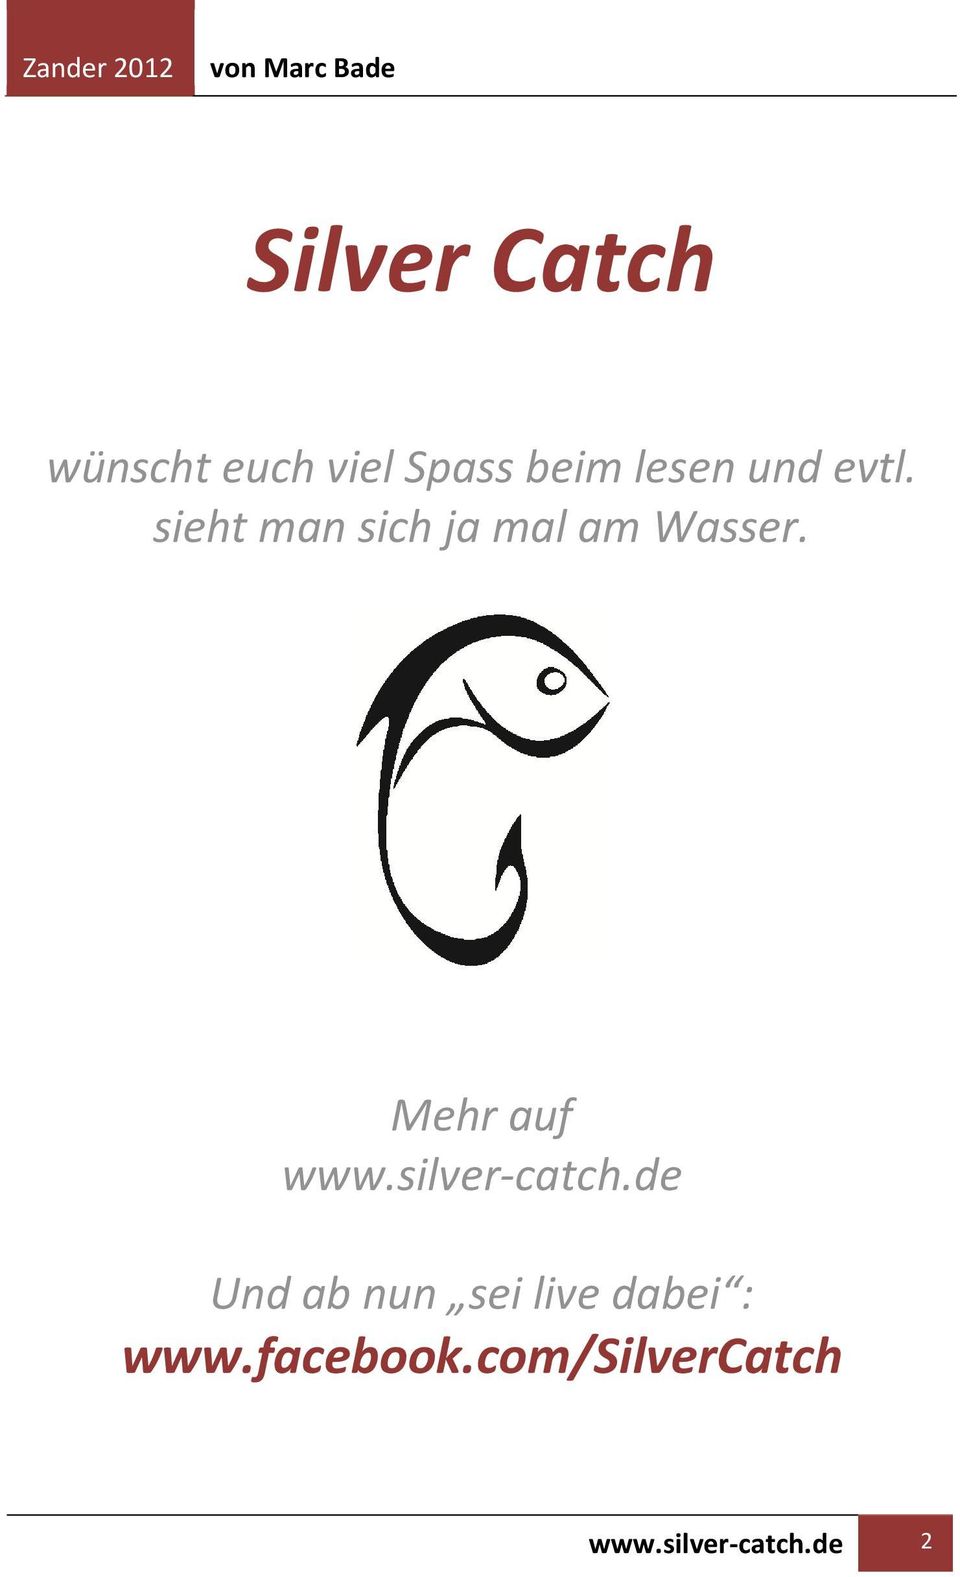 Mehr auf www.silver-catch.